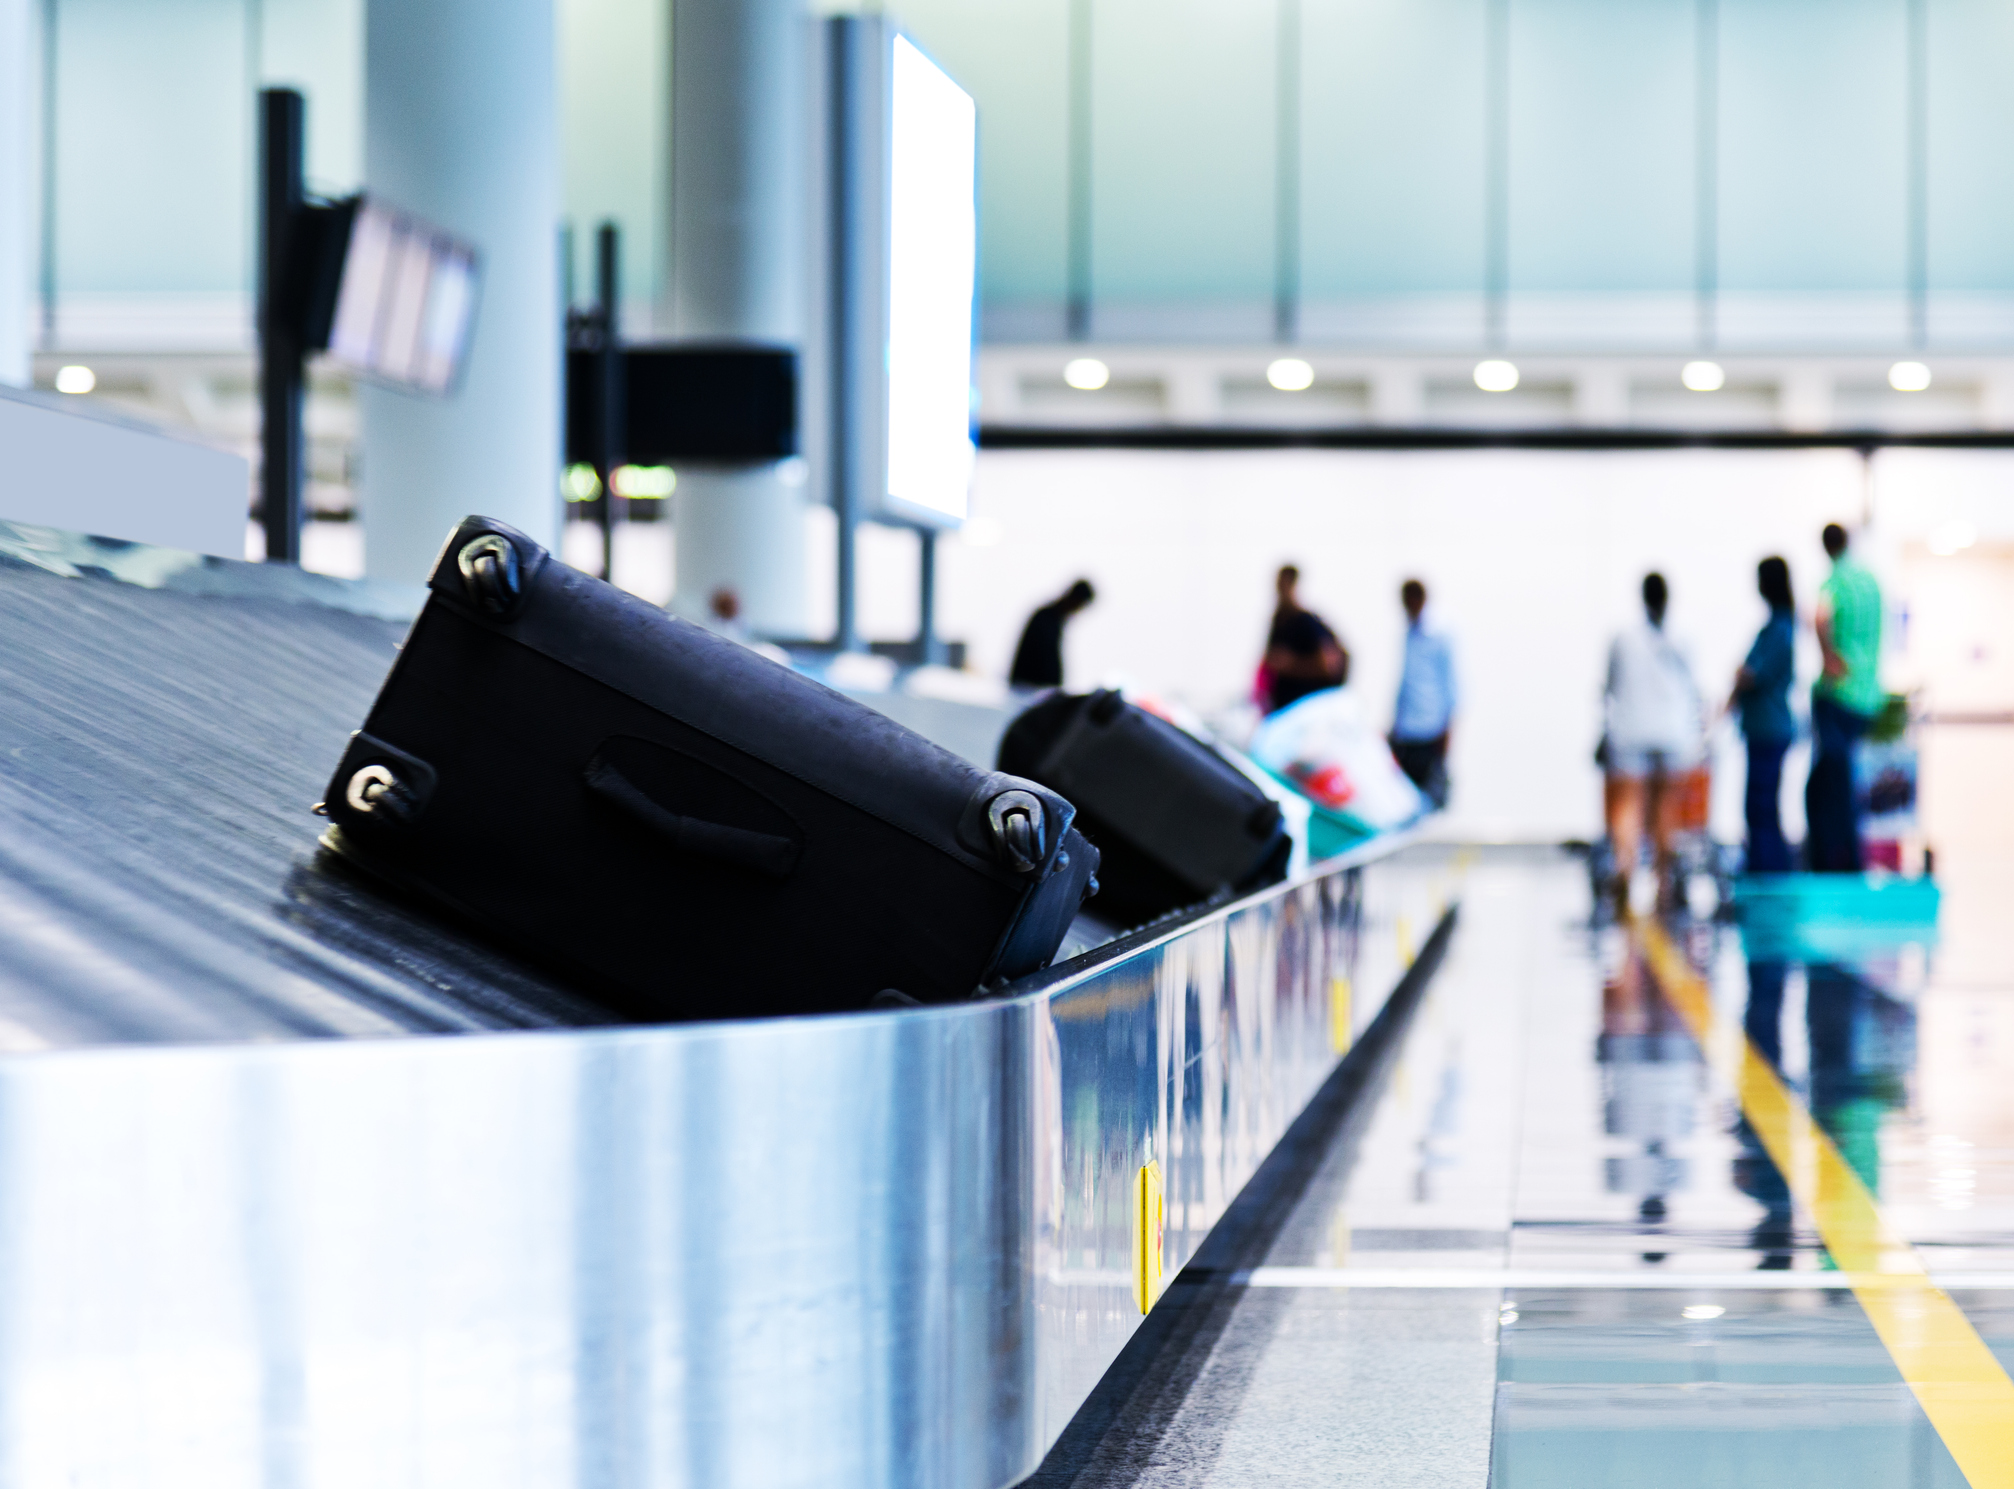 Gepäckband am Flughafen mit zwei schwarzen Koffern im Vordergrund und mehreren wartenden Menschen im Hintergrund